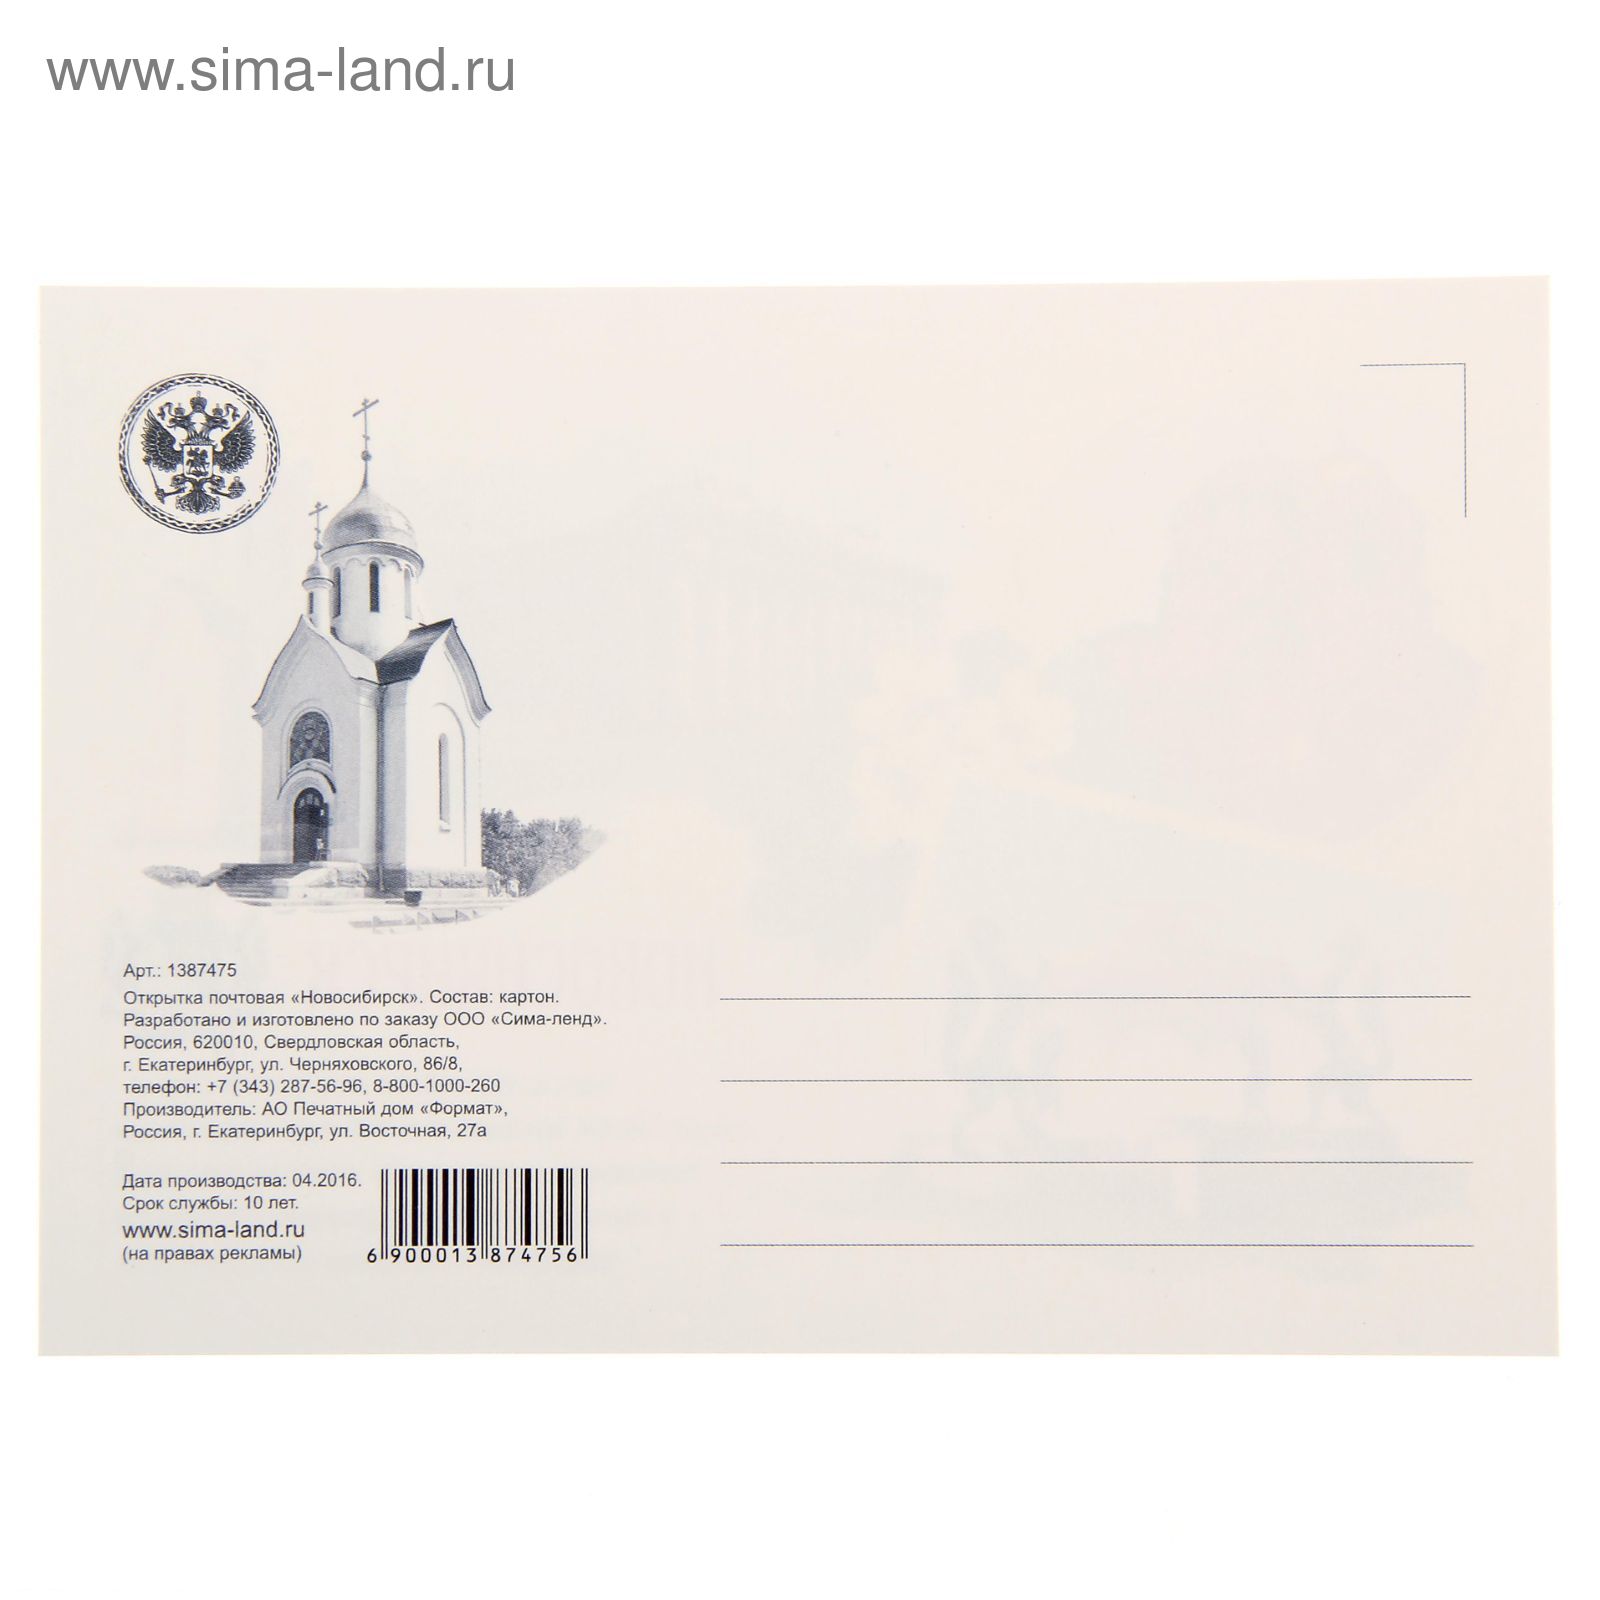 Rusmarka.ru – интернет-магазин издателя государственных знаков почтовой оплаты.